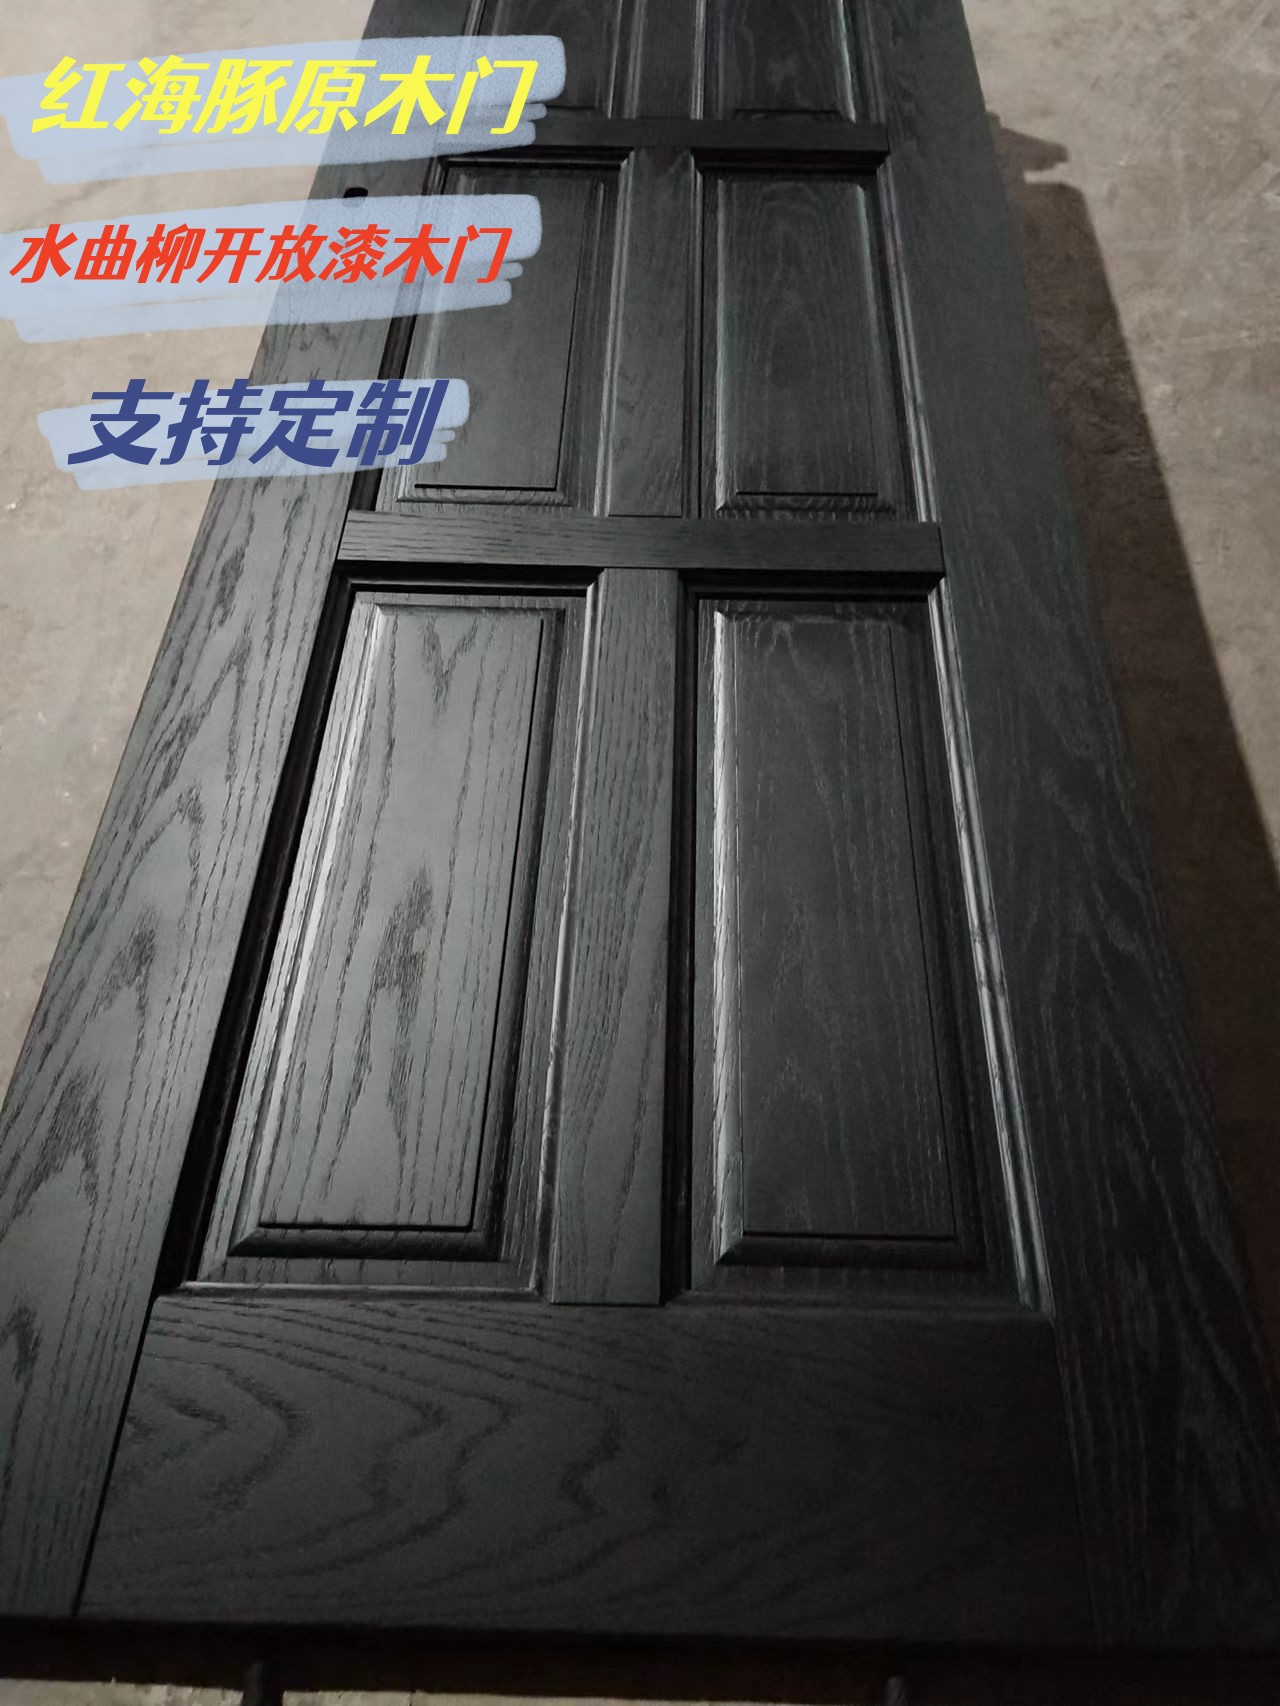 广东红海豚水曲柳开放漆原木门　纹理清晰　喜欢开放漆效果可选择